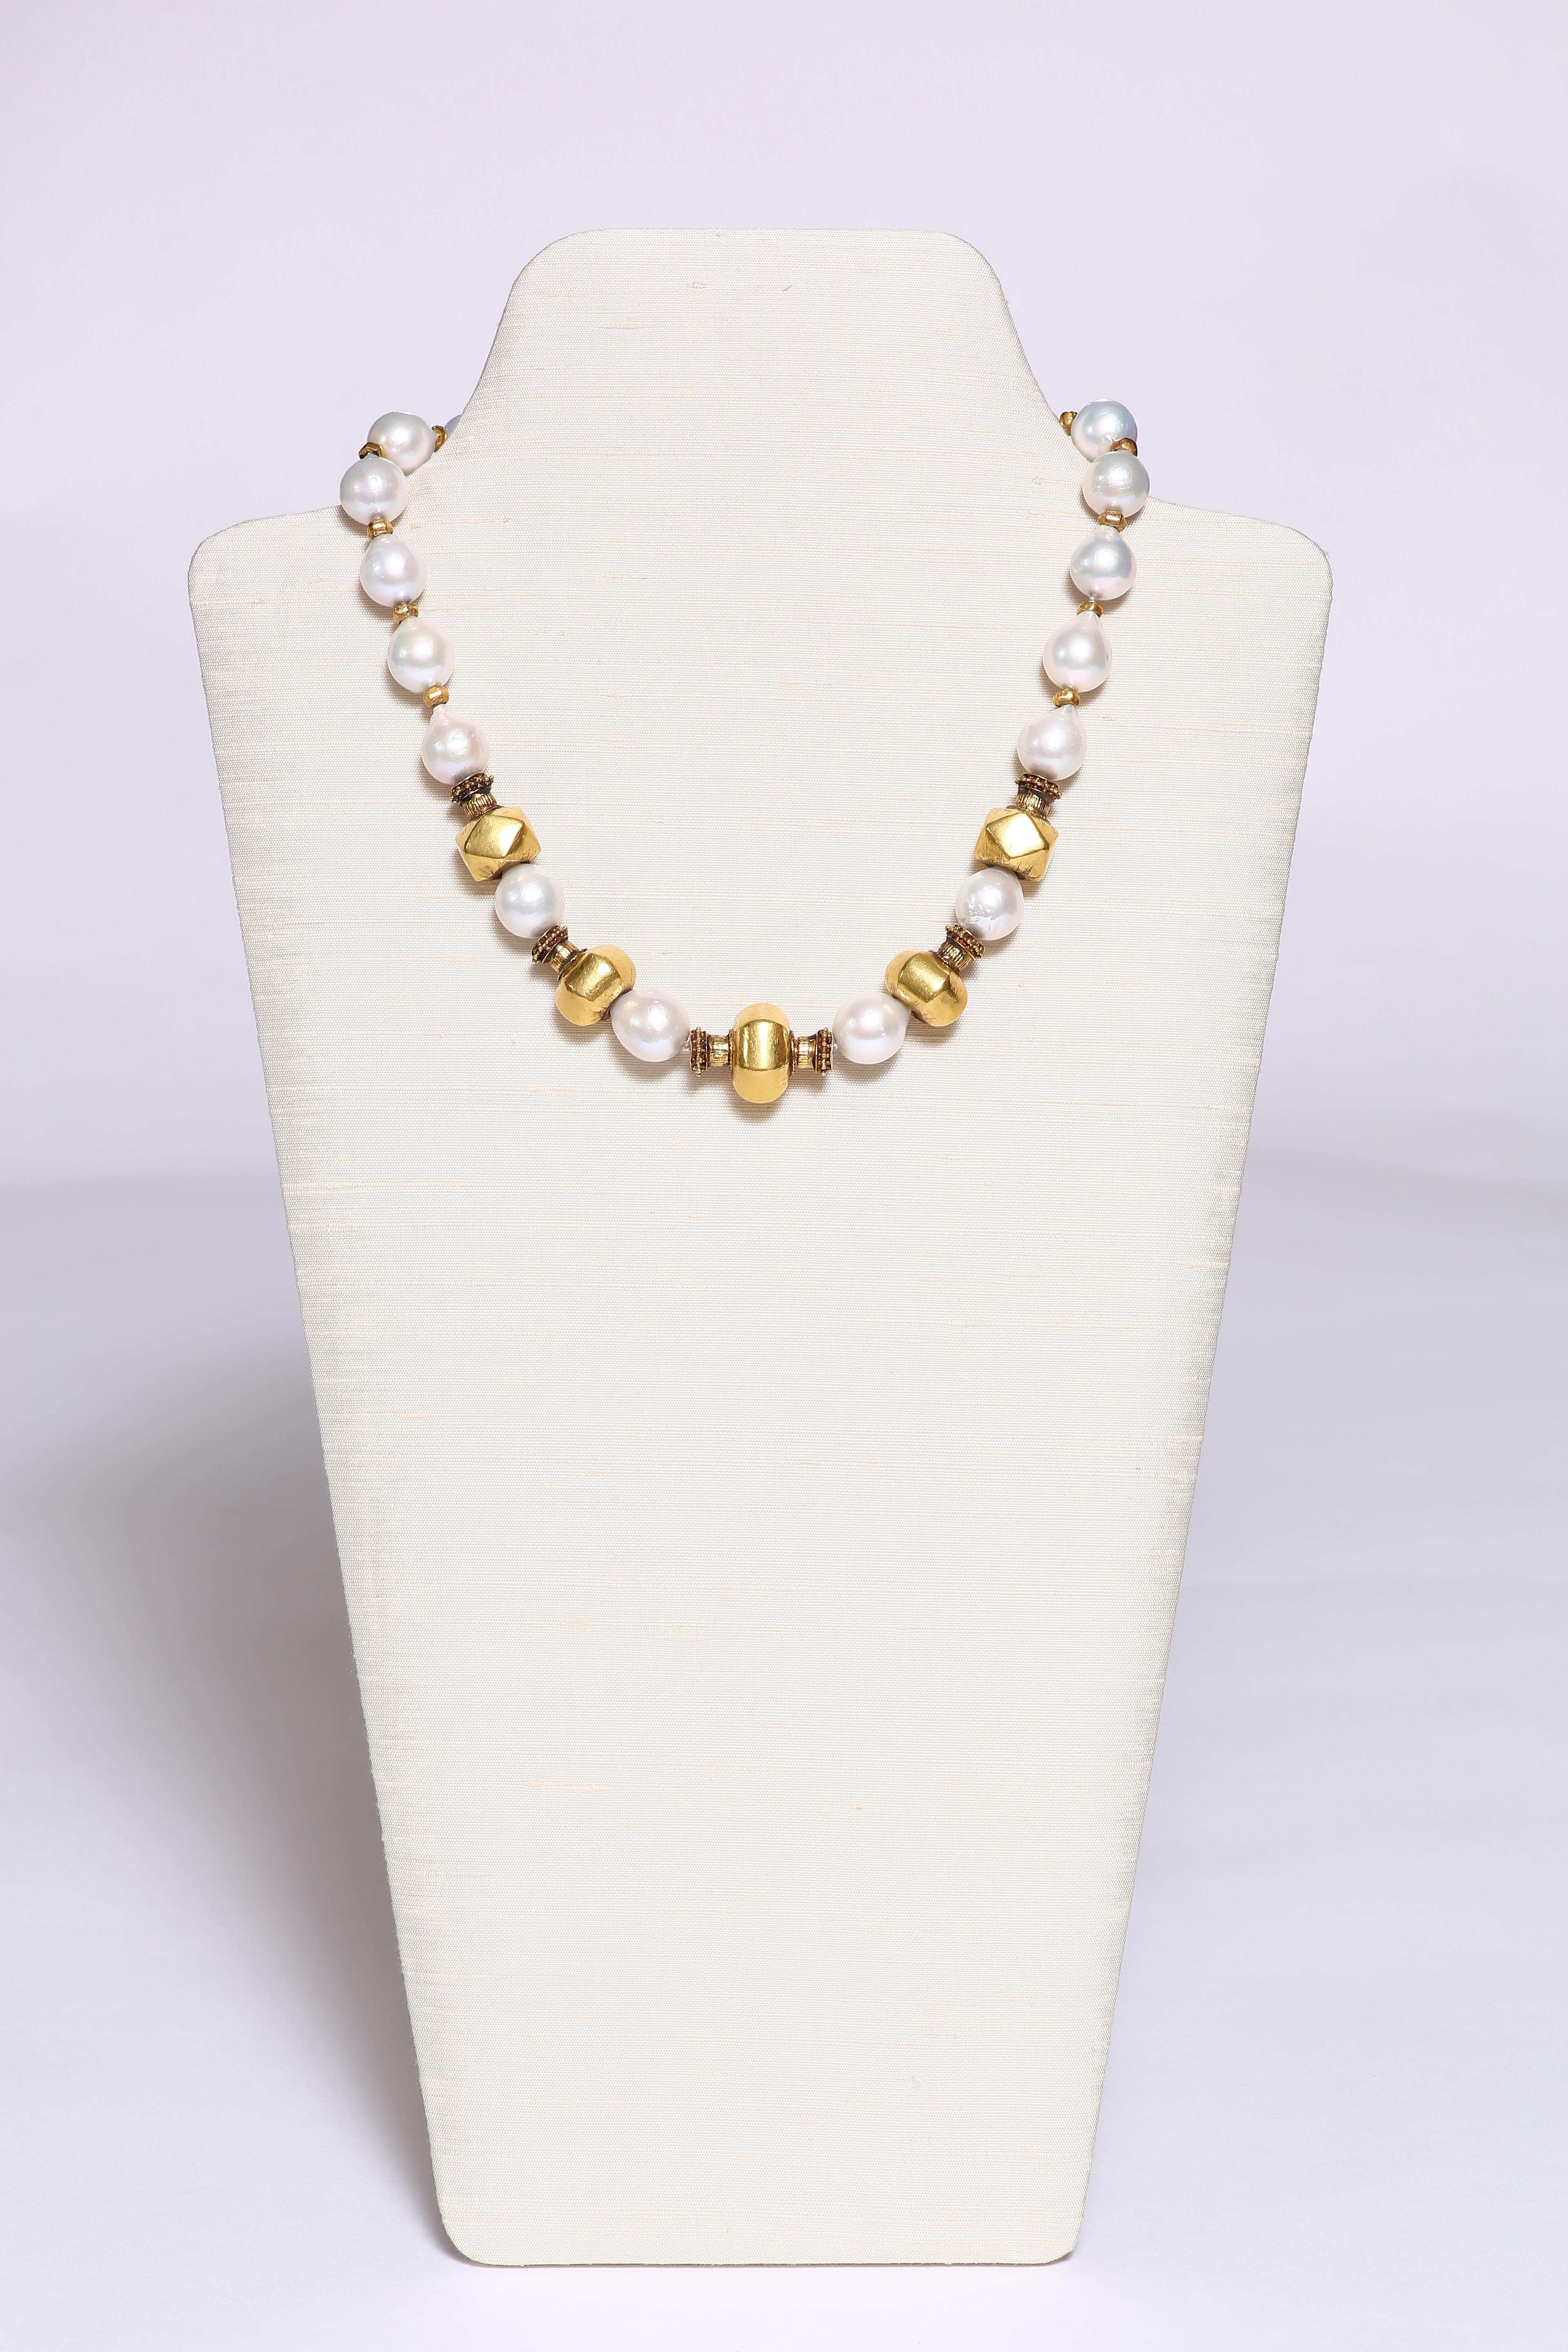 Cinq grandes perles lustrées en or vieux cire sont accentuées par de merveilleuses perles d'eau douce baroques. Les perles continuent à former le collier avec de petites perles d'or à facettes entre chaque perle. Le collier mesure 19 